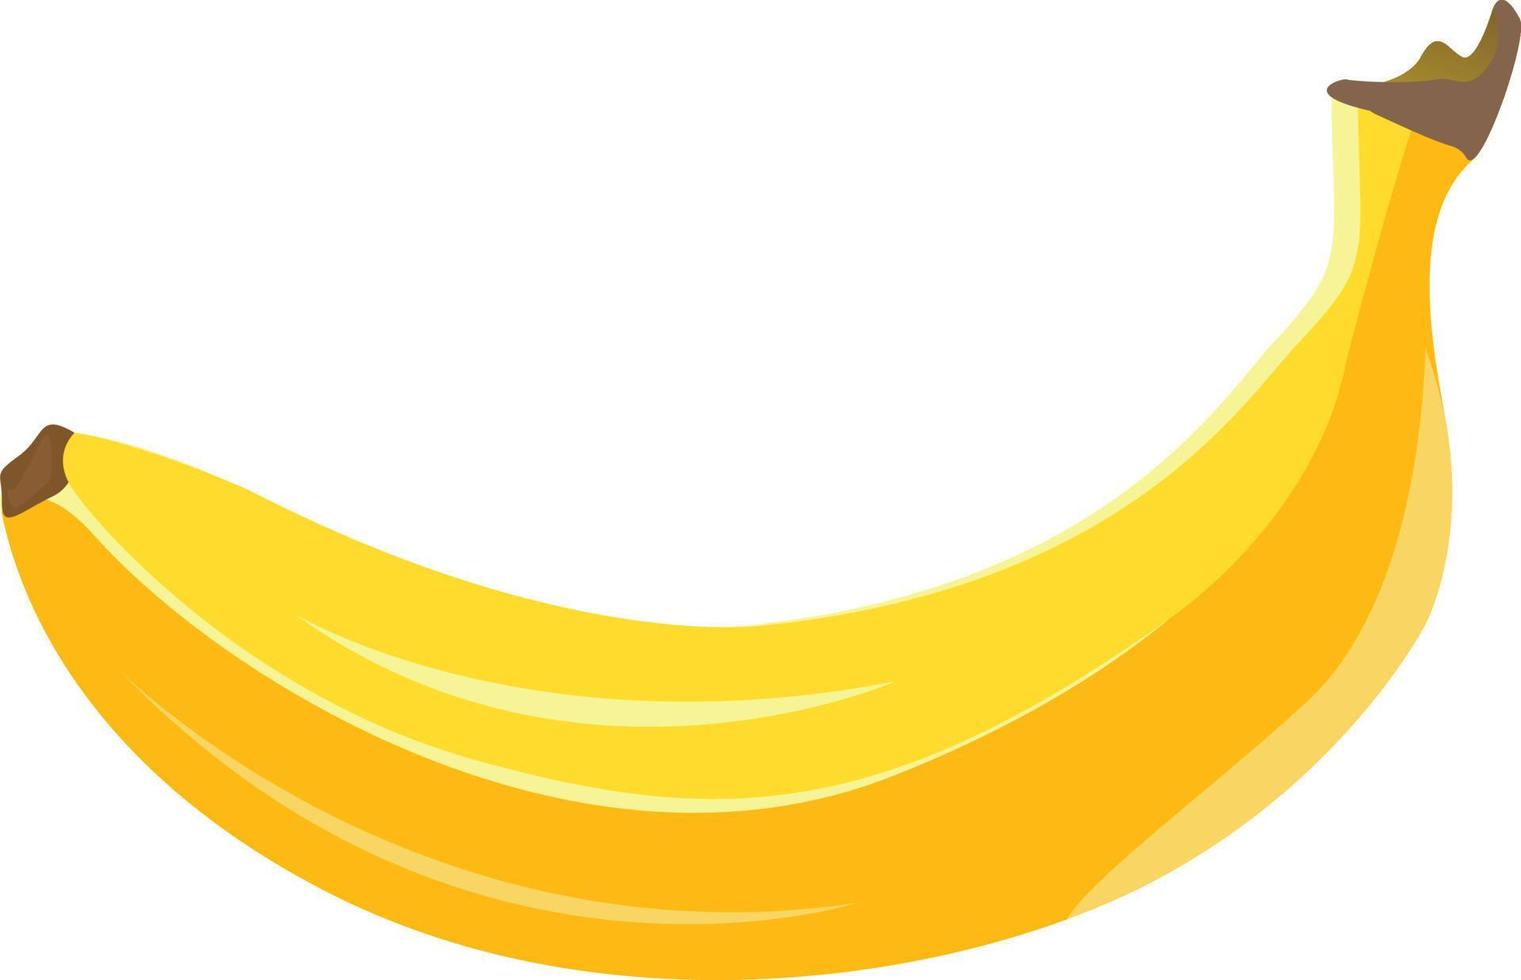 plátano amarillo, ilustración, vector sobre fondo blanco